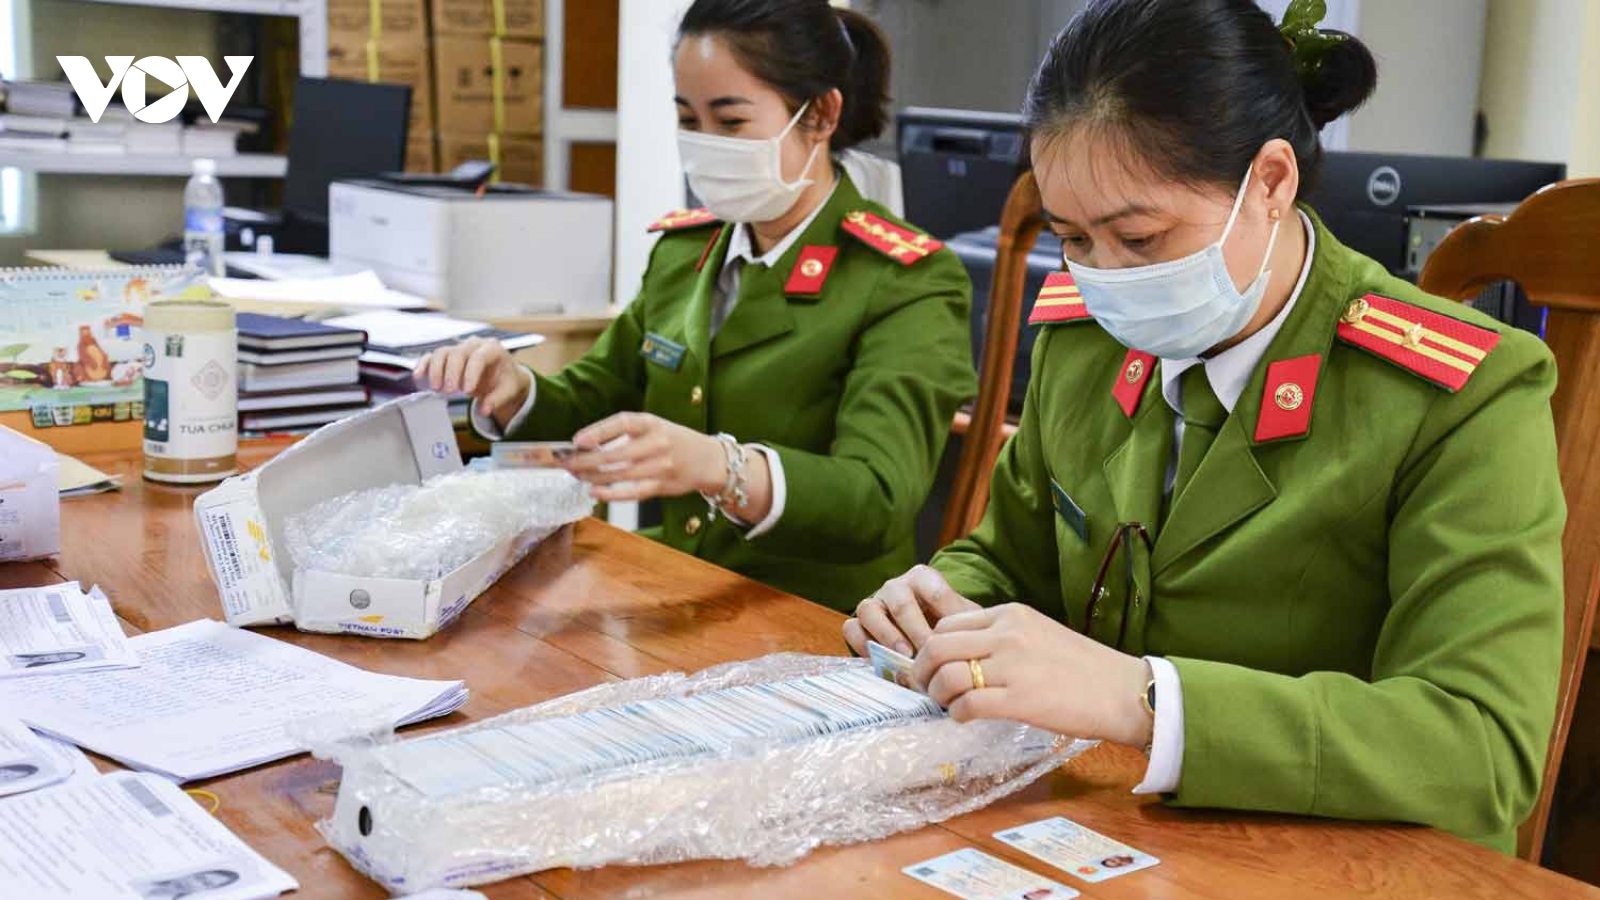 Hơn 5.000 thẻ căn cước gắn chip điện tử đã được cấp cho người dân Điện Biên